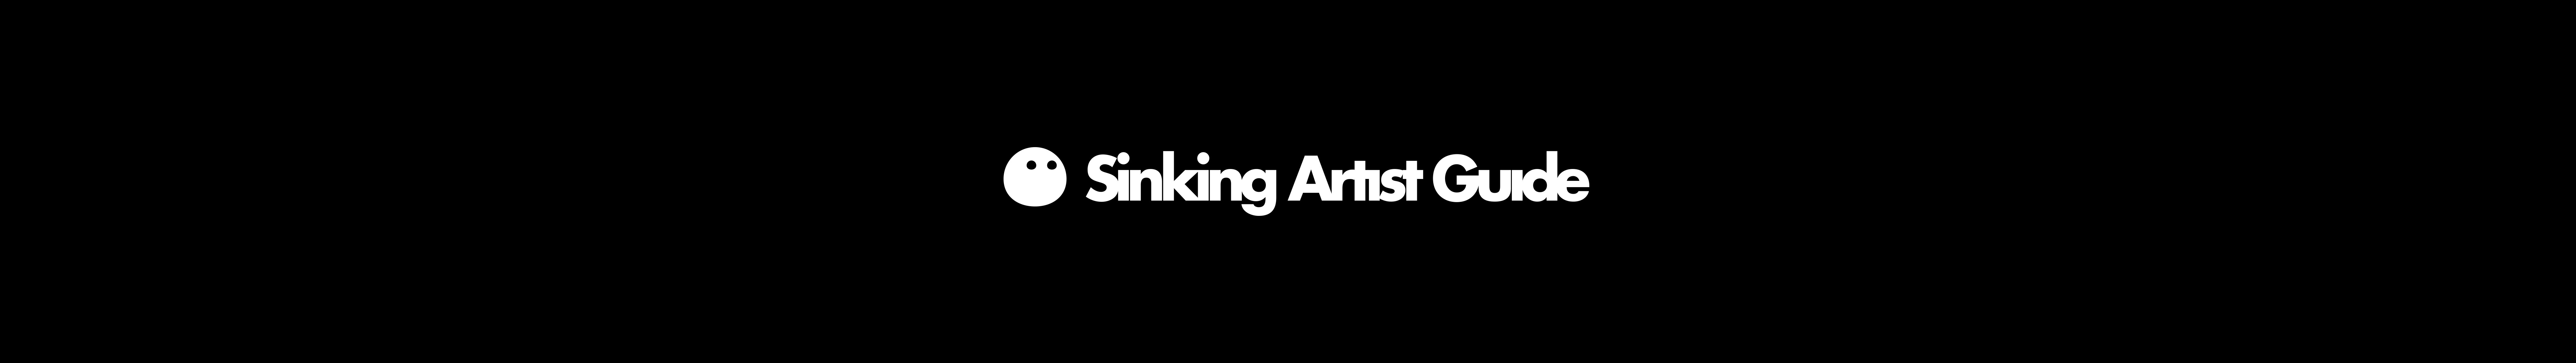 Sinking Artist Guide 插画师自救指南 的个人资料横幅